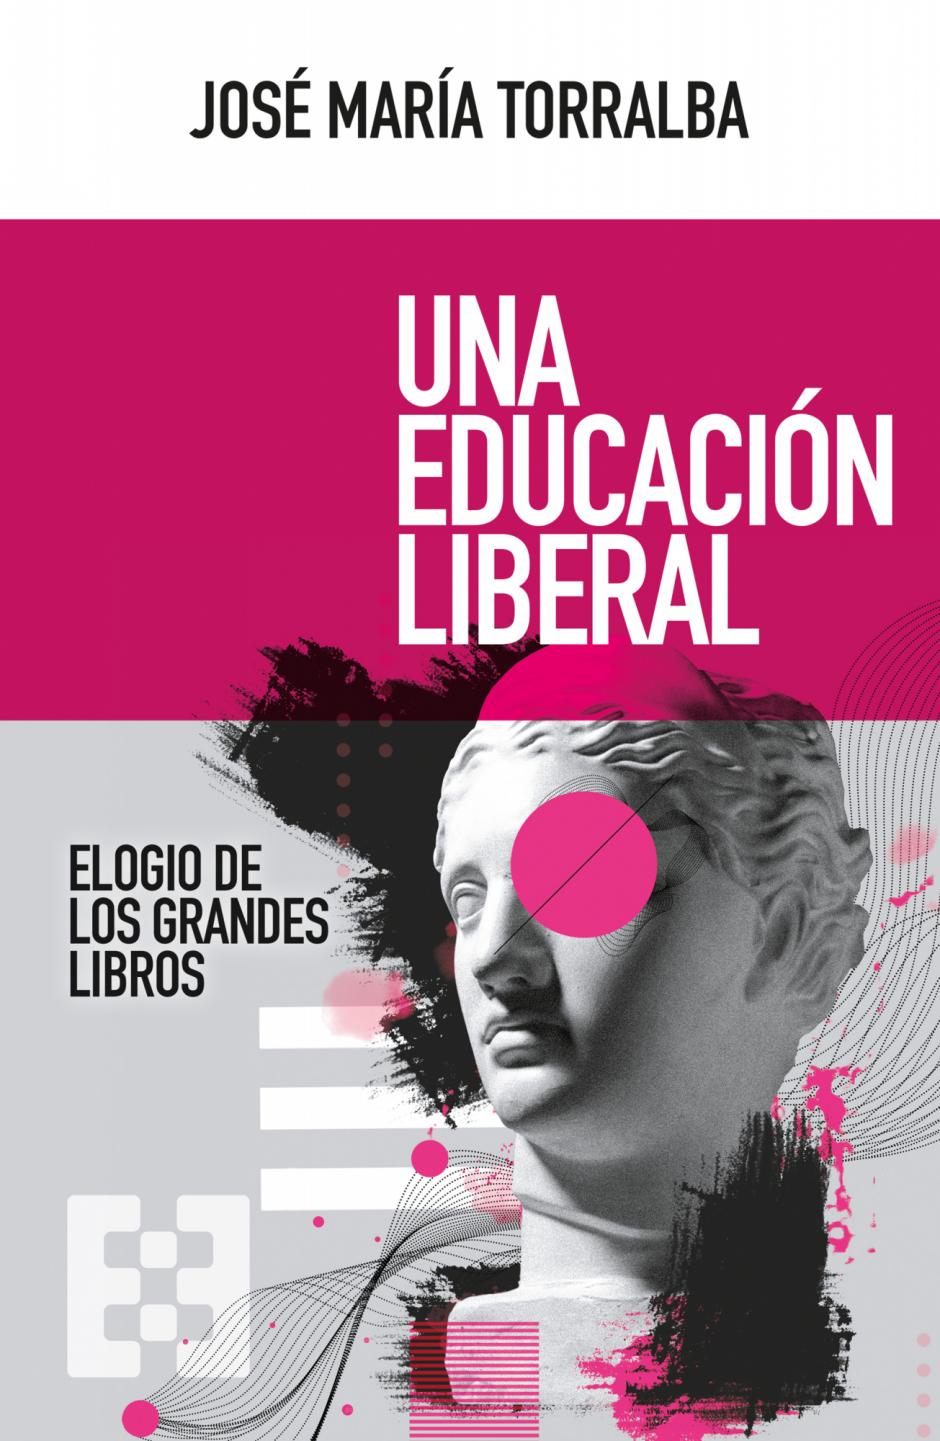 José María Torralba acaba de publicar 'Una educación liberal'; más amplia y posible